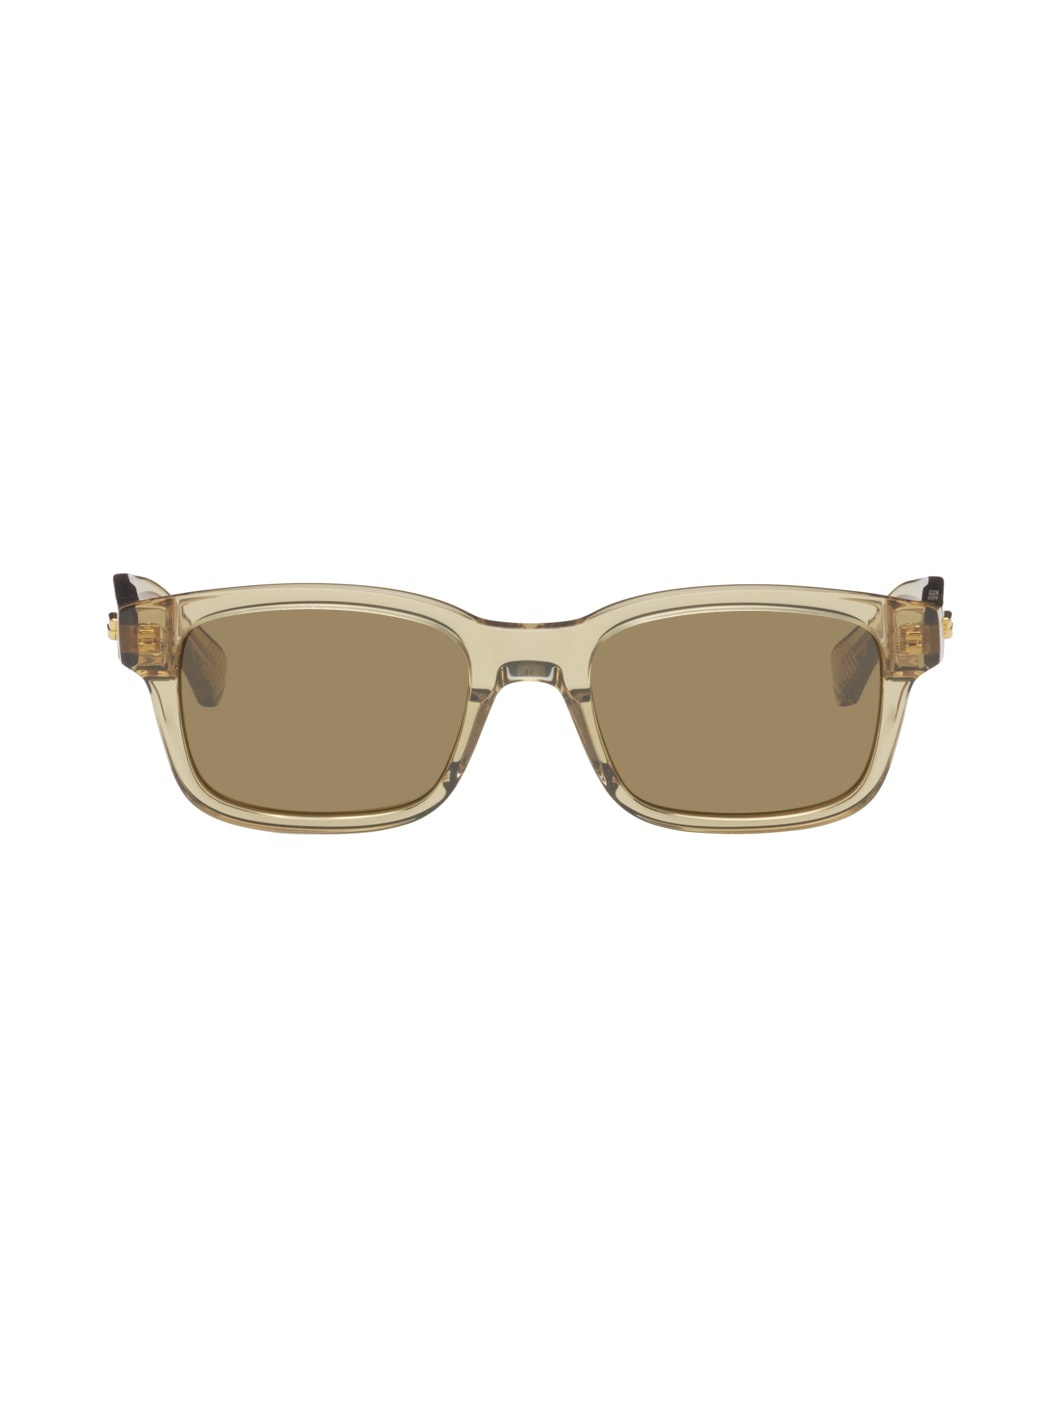 Brown Square Sunglasses - 1